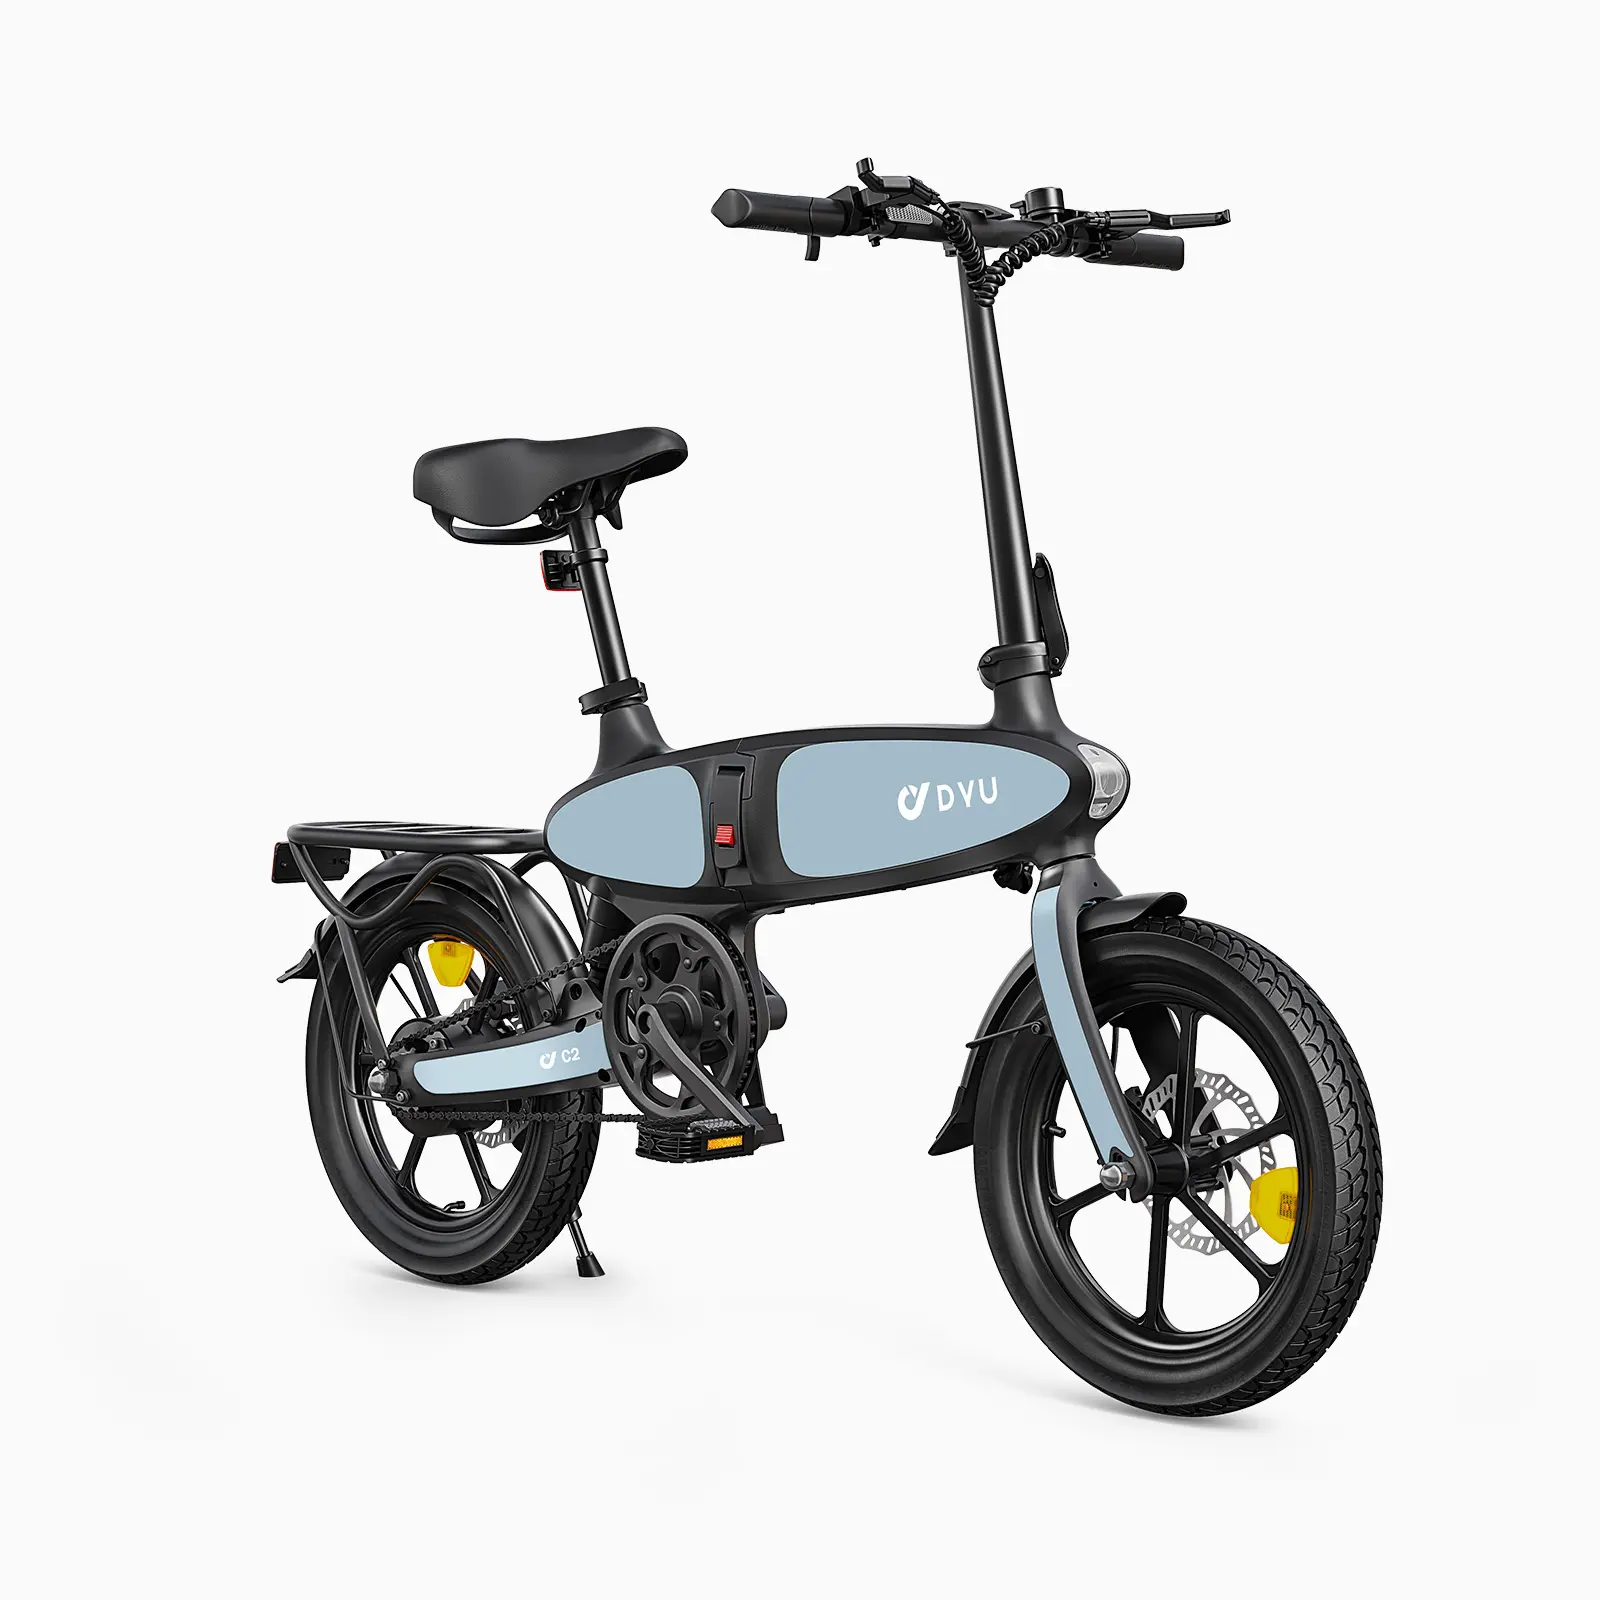 Spedizione gratuita DYU C2 pieghevole Velo elettrique bici elettrica da 16 pollici bicicletta elettrica EU/US/UK stock a buon mercato pieghevole e Bike